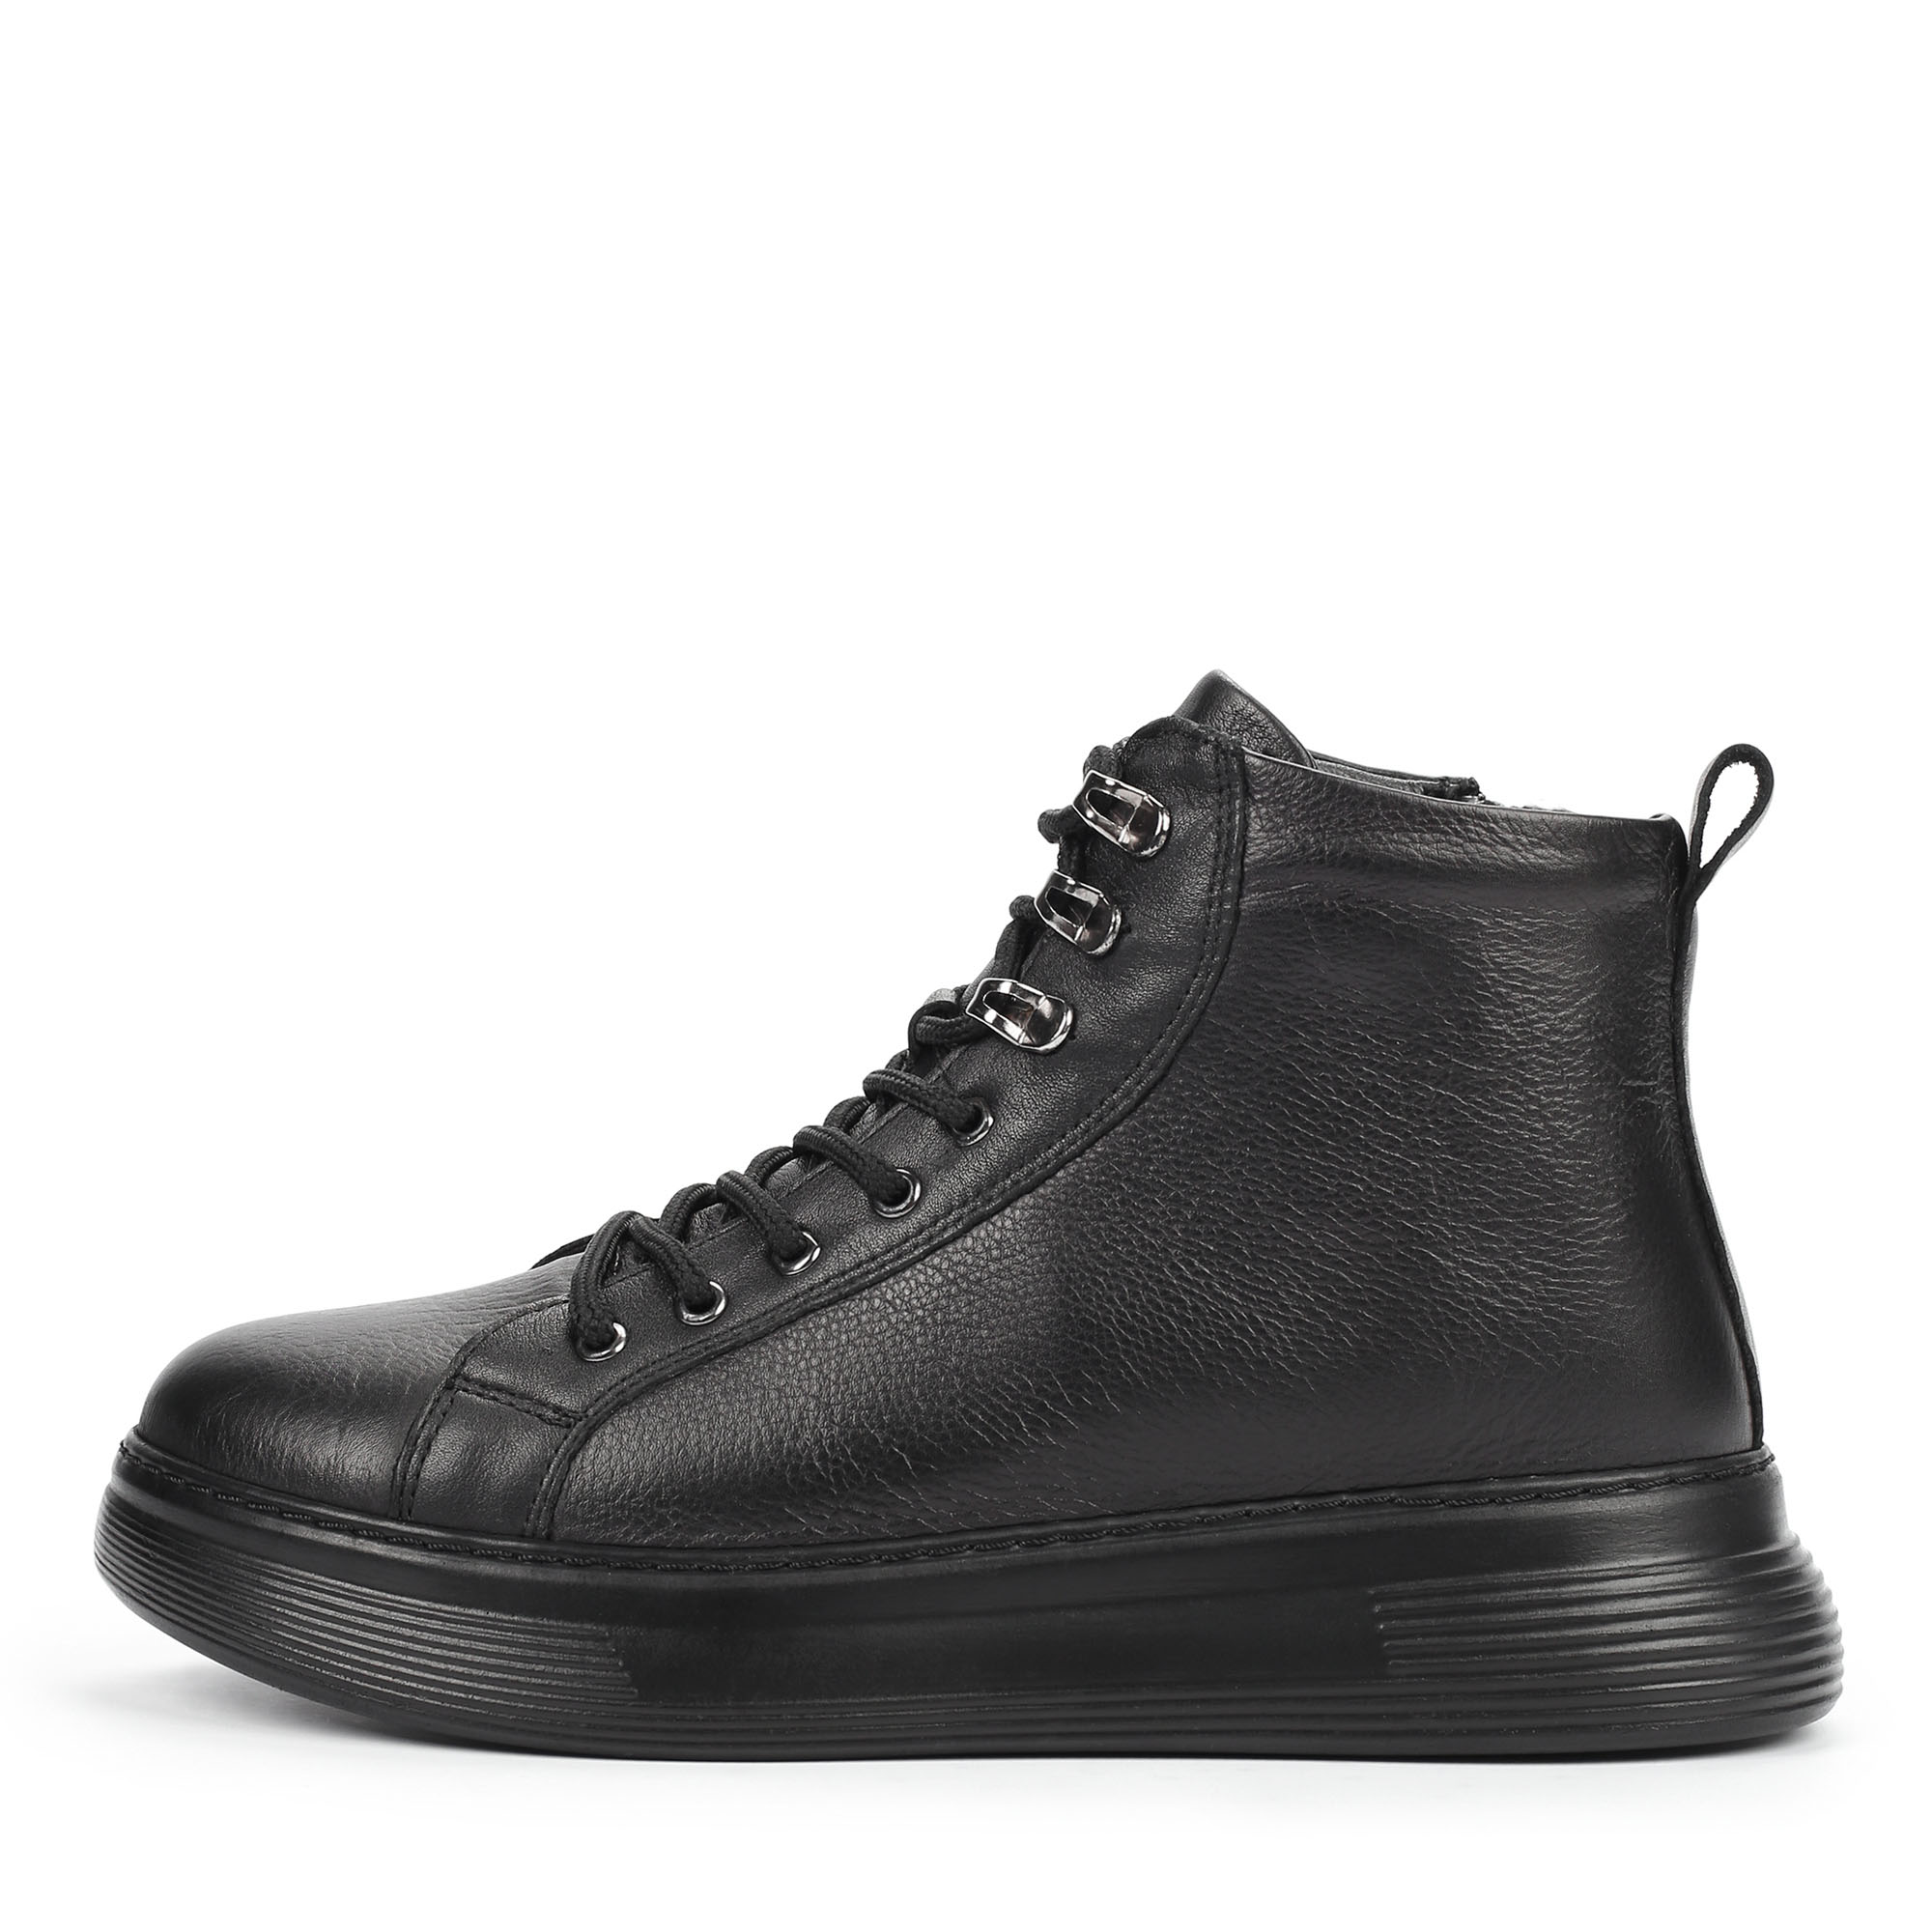 Ботинки Thomas Munz 558-036A-2102, цвет черный, размер 38 - фото 1